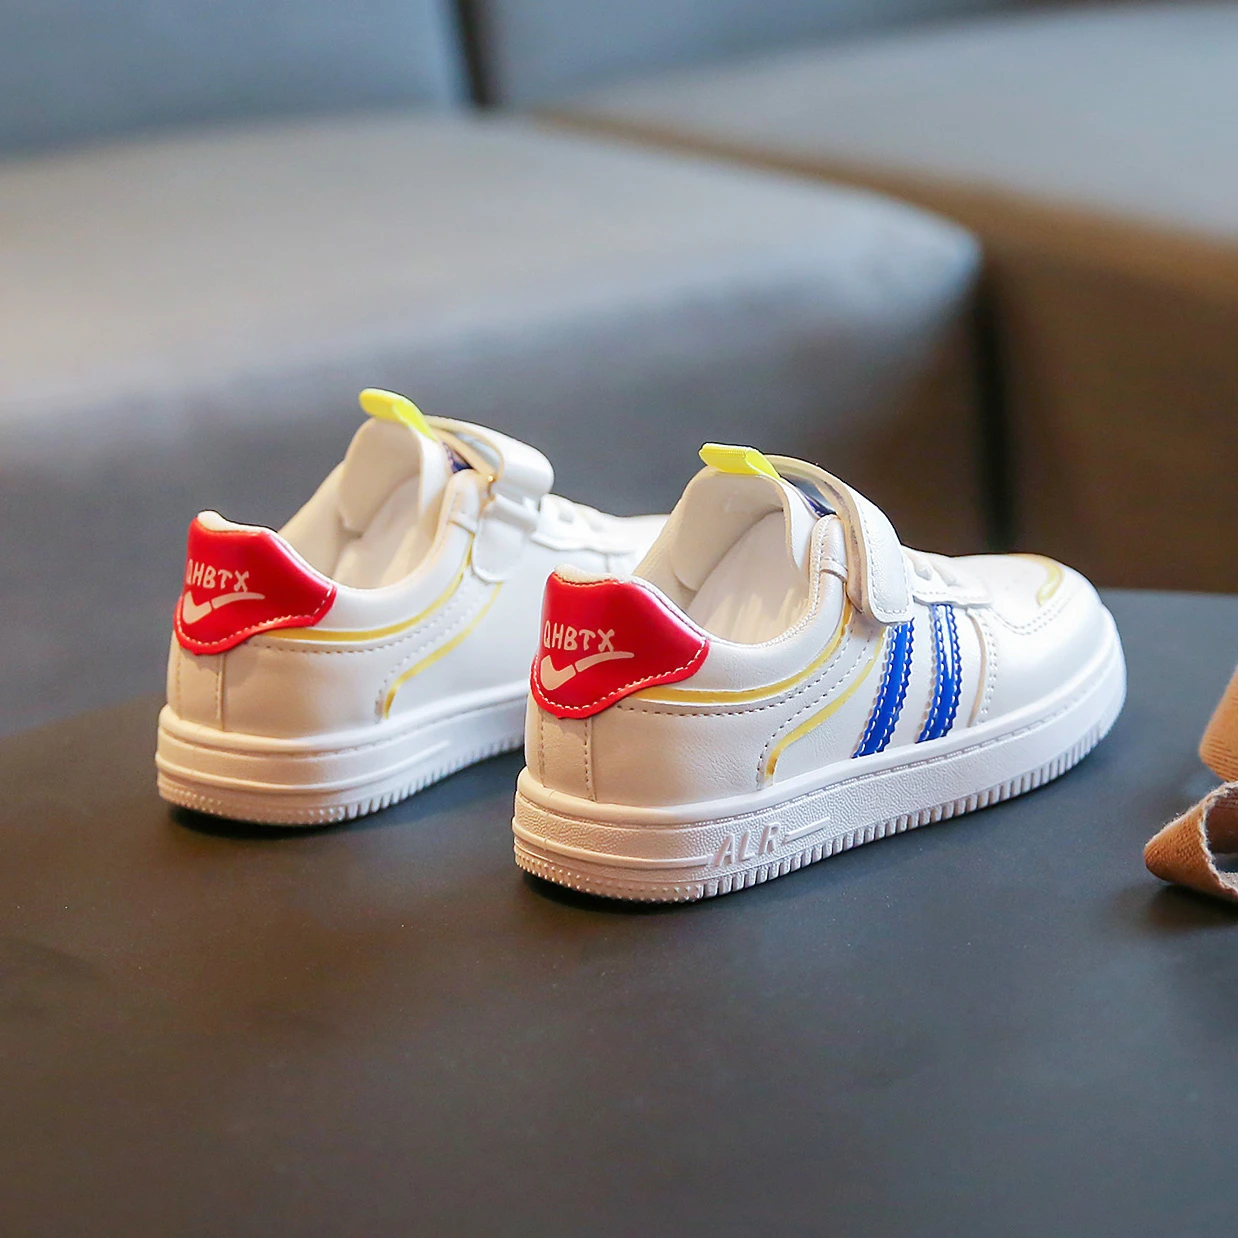 Sonbahar Yeni Rahat Deri Erkek Kız Ayakkabı Beyaz Bebek Yürüyor spor ayakkabılar Tenis Çocuk Çocuk Bebek Nefes Ayakkabı